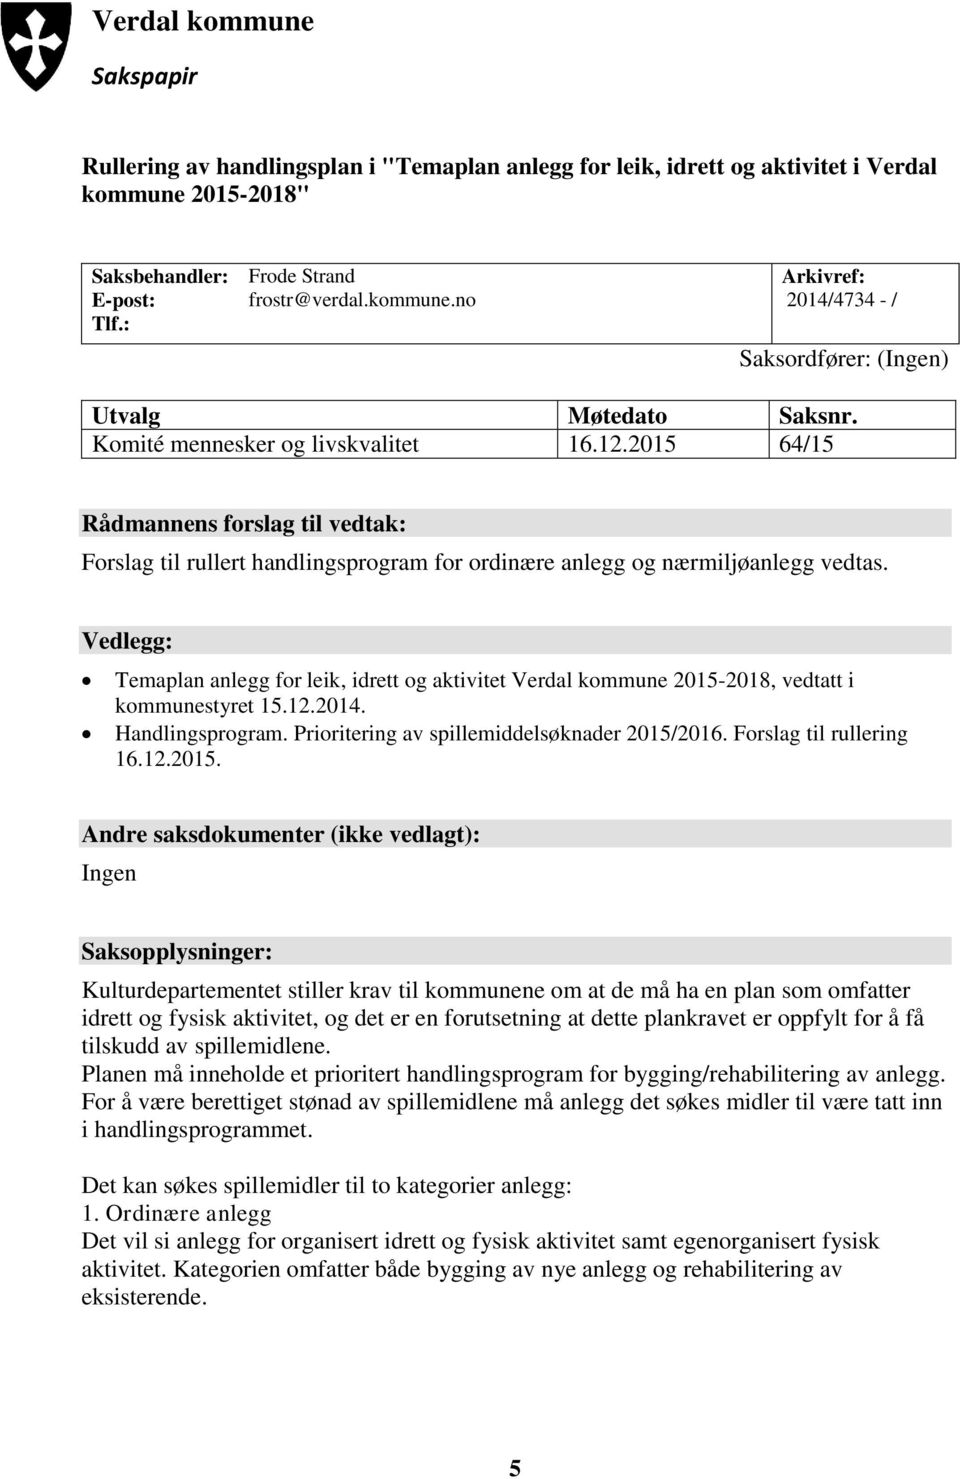 Vedlegg: Temaplan anlegg for leik, idrett og aktivitet Verdal kommune 2015-2018, vedtatt i kommunestyret 15.12.2014. Handlingsprogram. Prioritering av spillemiddelsøknader 2015/2016.